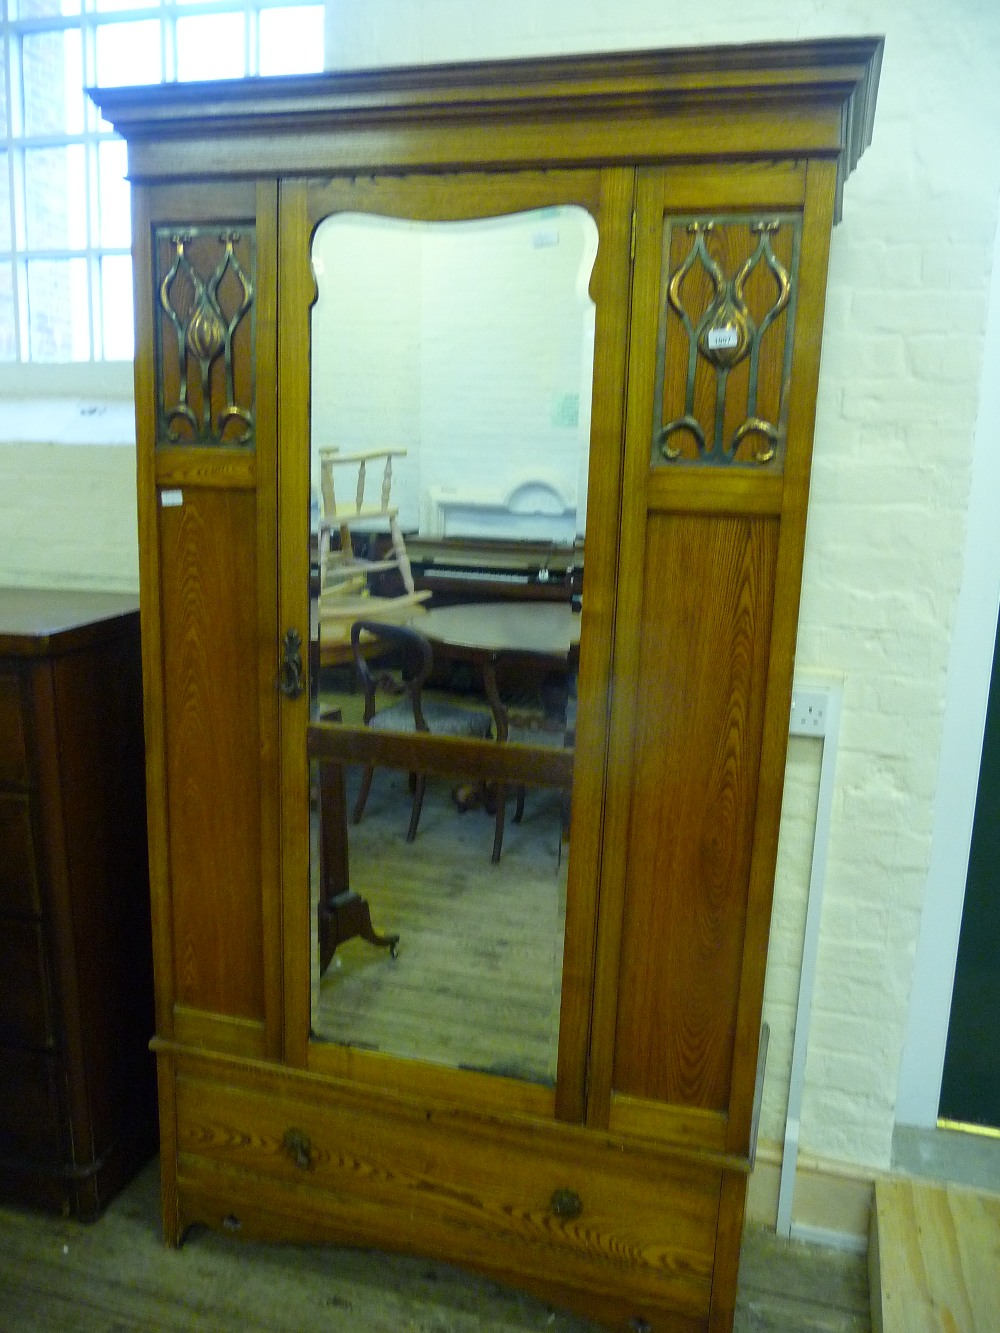 An Oak Art Nouveau style wardrobe with single mirrored door